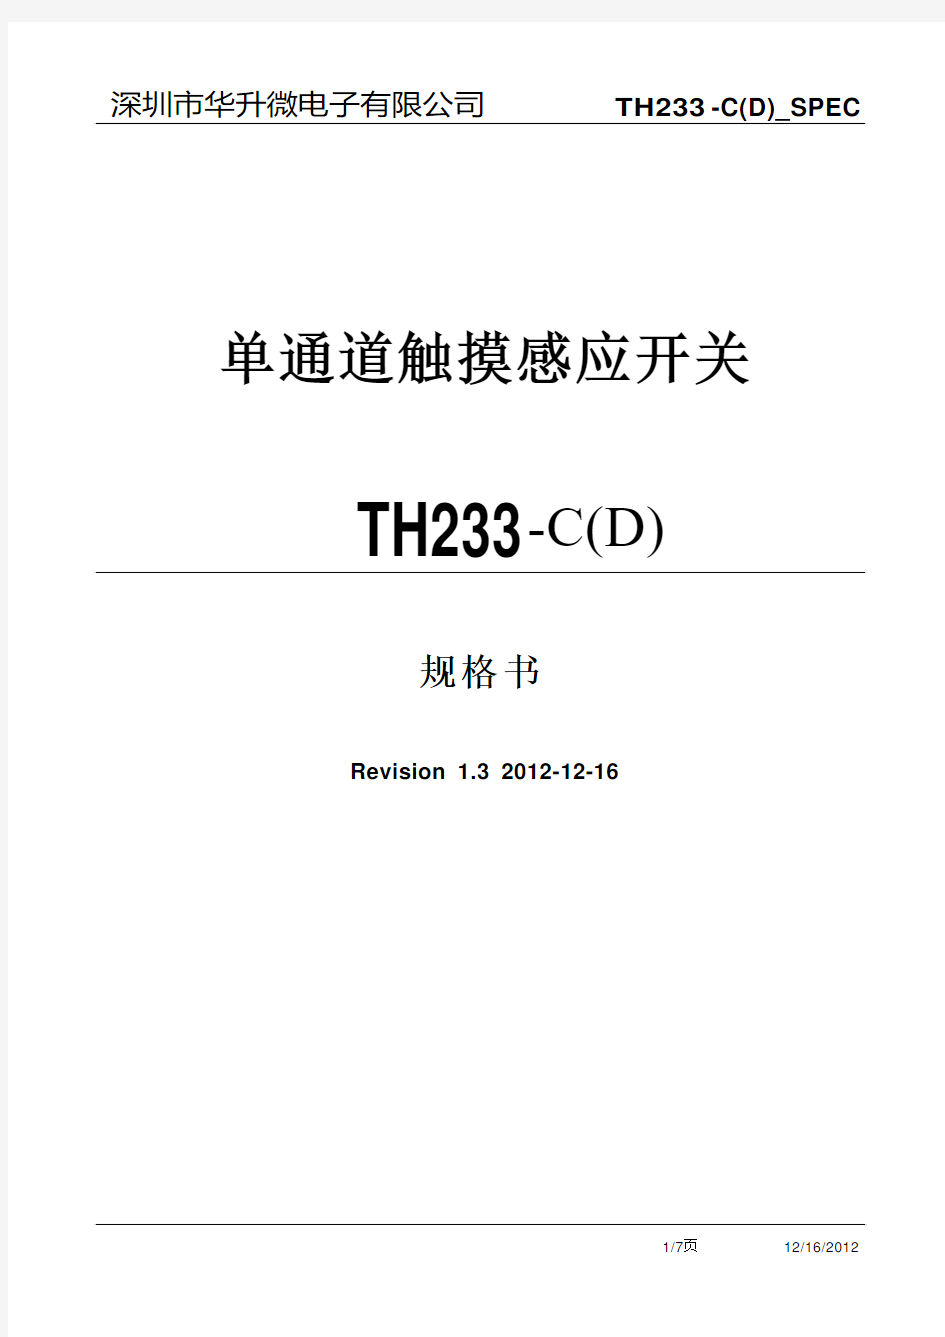 低功耗单键触控IC,内置LDO稳压器TH233 -C(D)_SPEC_Ver1.3